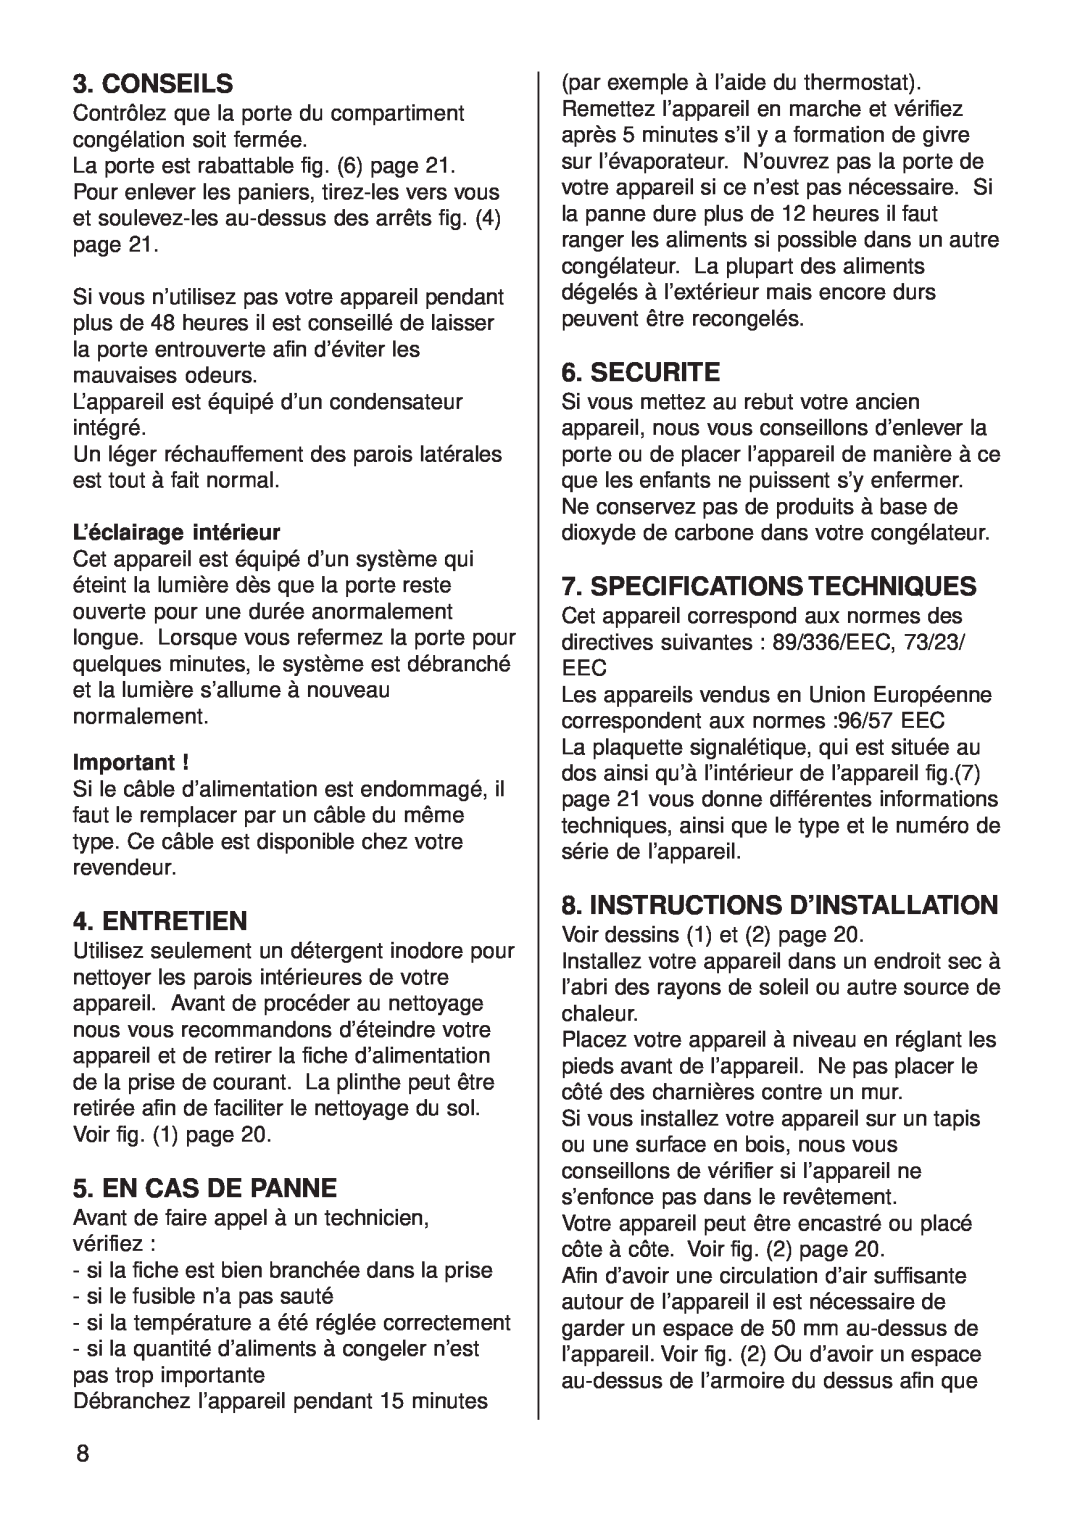 Smeg CV35BS4 manual Conseils, Entretien, En Cas De Panne, Securite, Specifications Techniques, Instructions D’Installation 